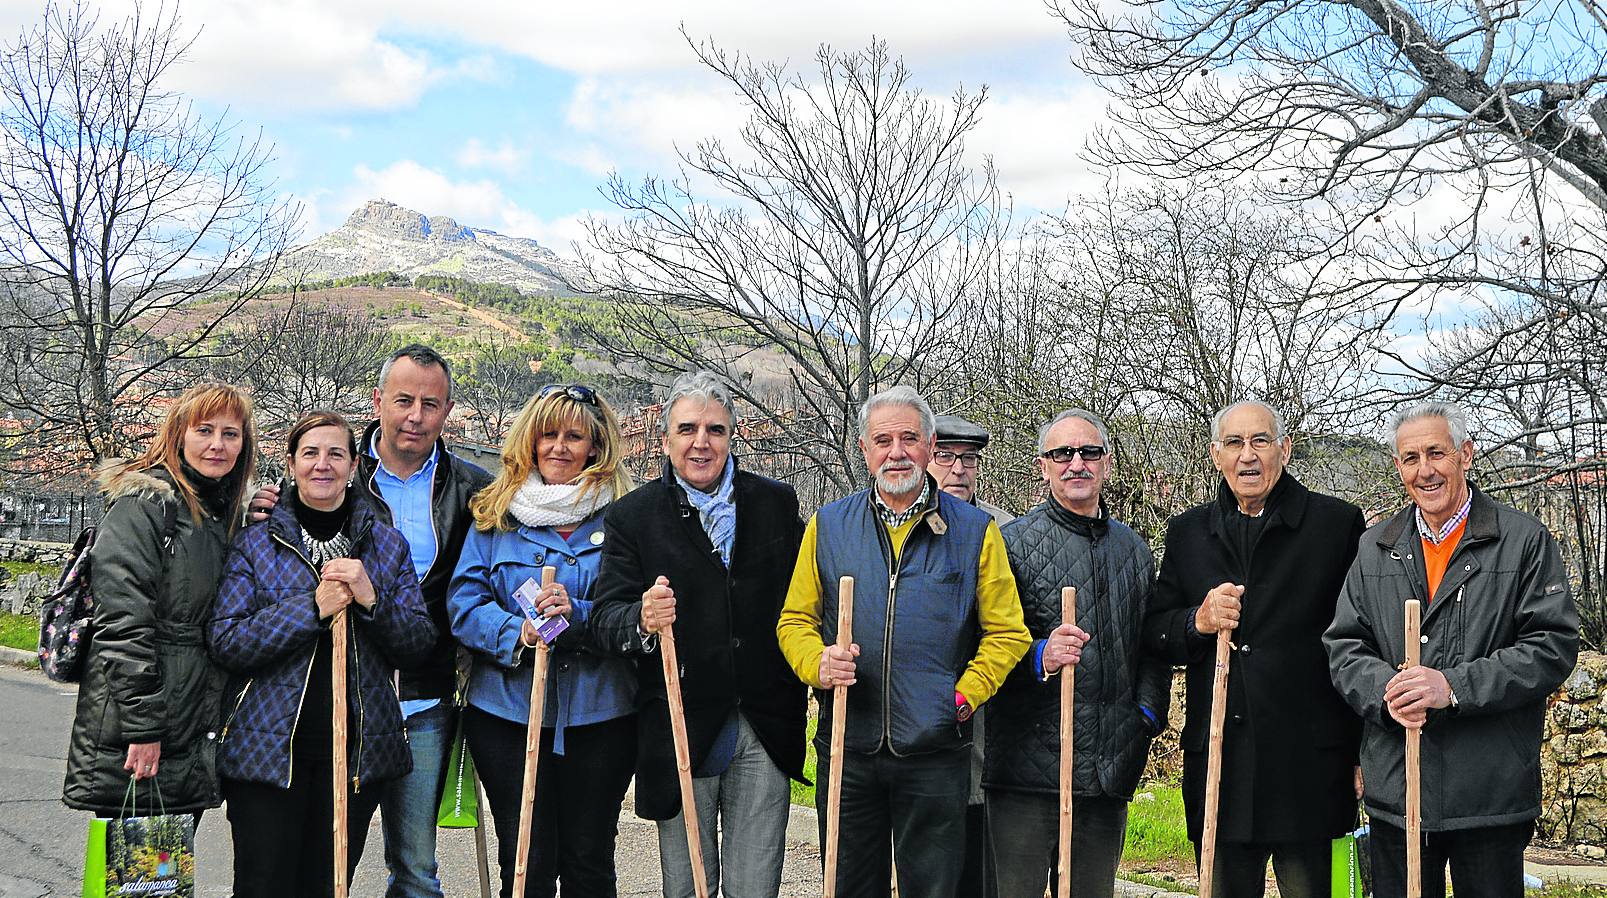 Alcaldes y concejales de varios municipios junto al diputado de Turismo, con la Peña de Francia al fondo. 